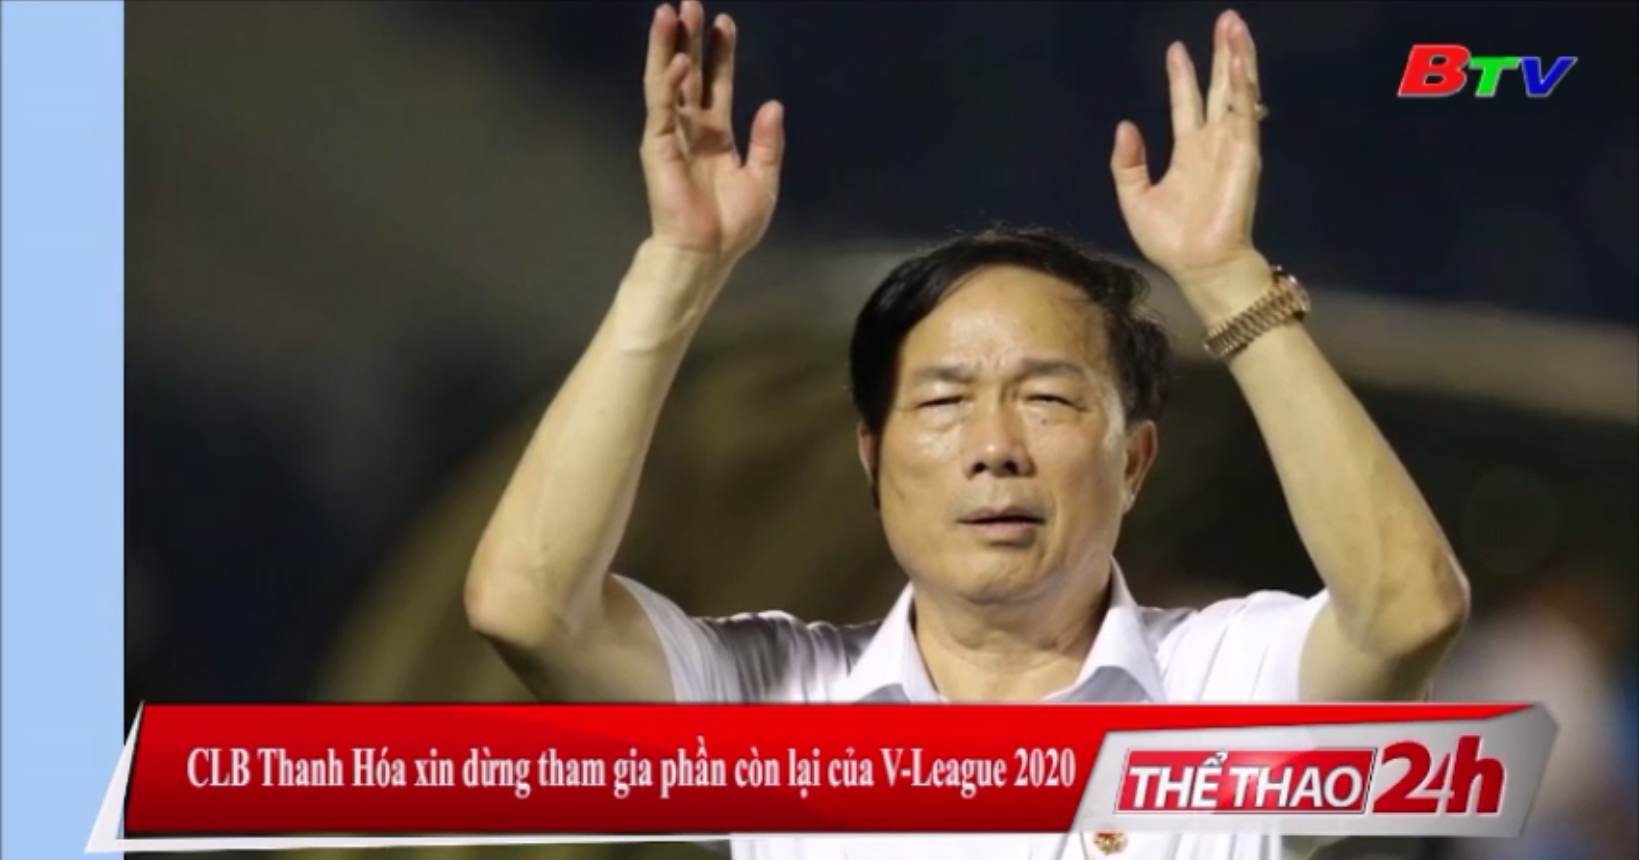 CLB Thanh Hóa xin dừng tham gia phần còn lại của V-League 2020